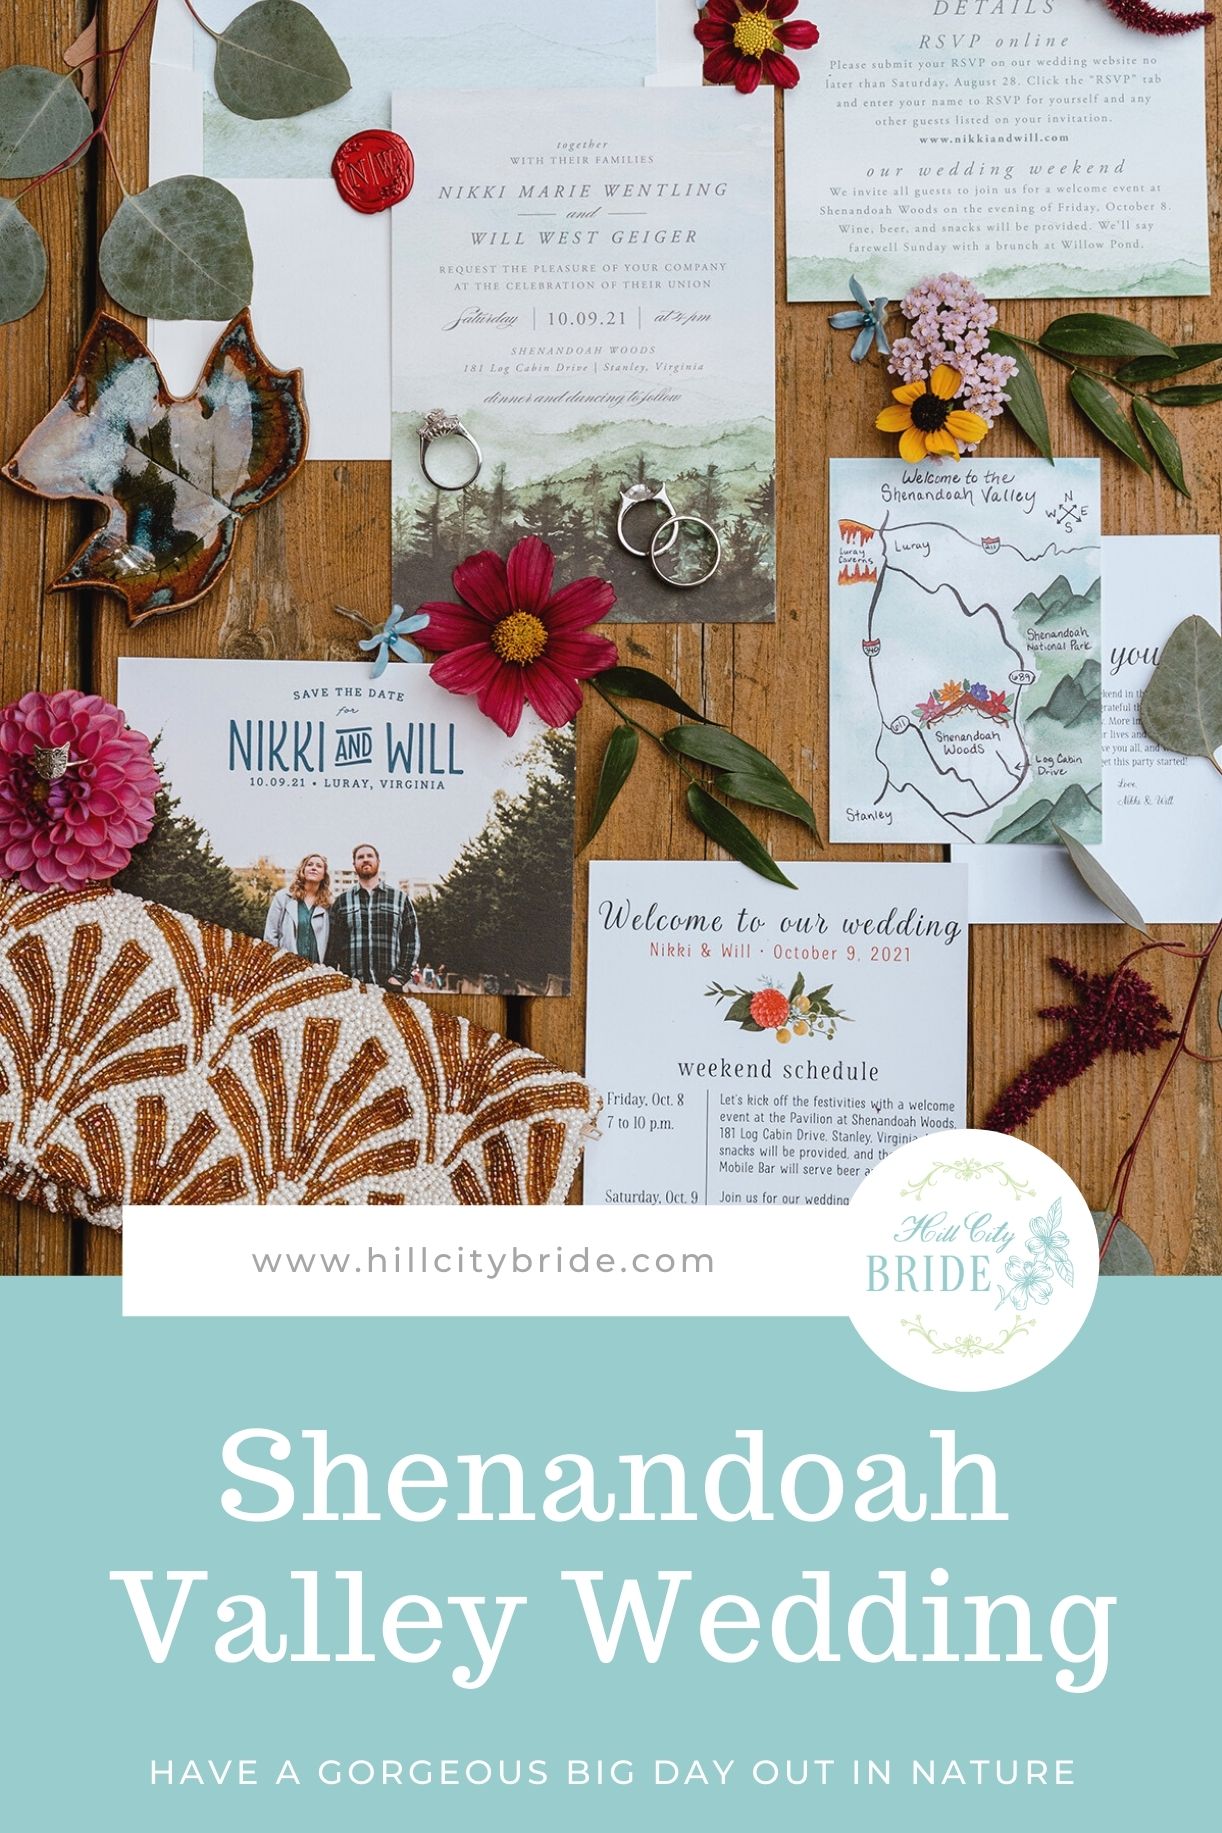 Shenandoah Valley Weddings Venue